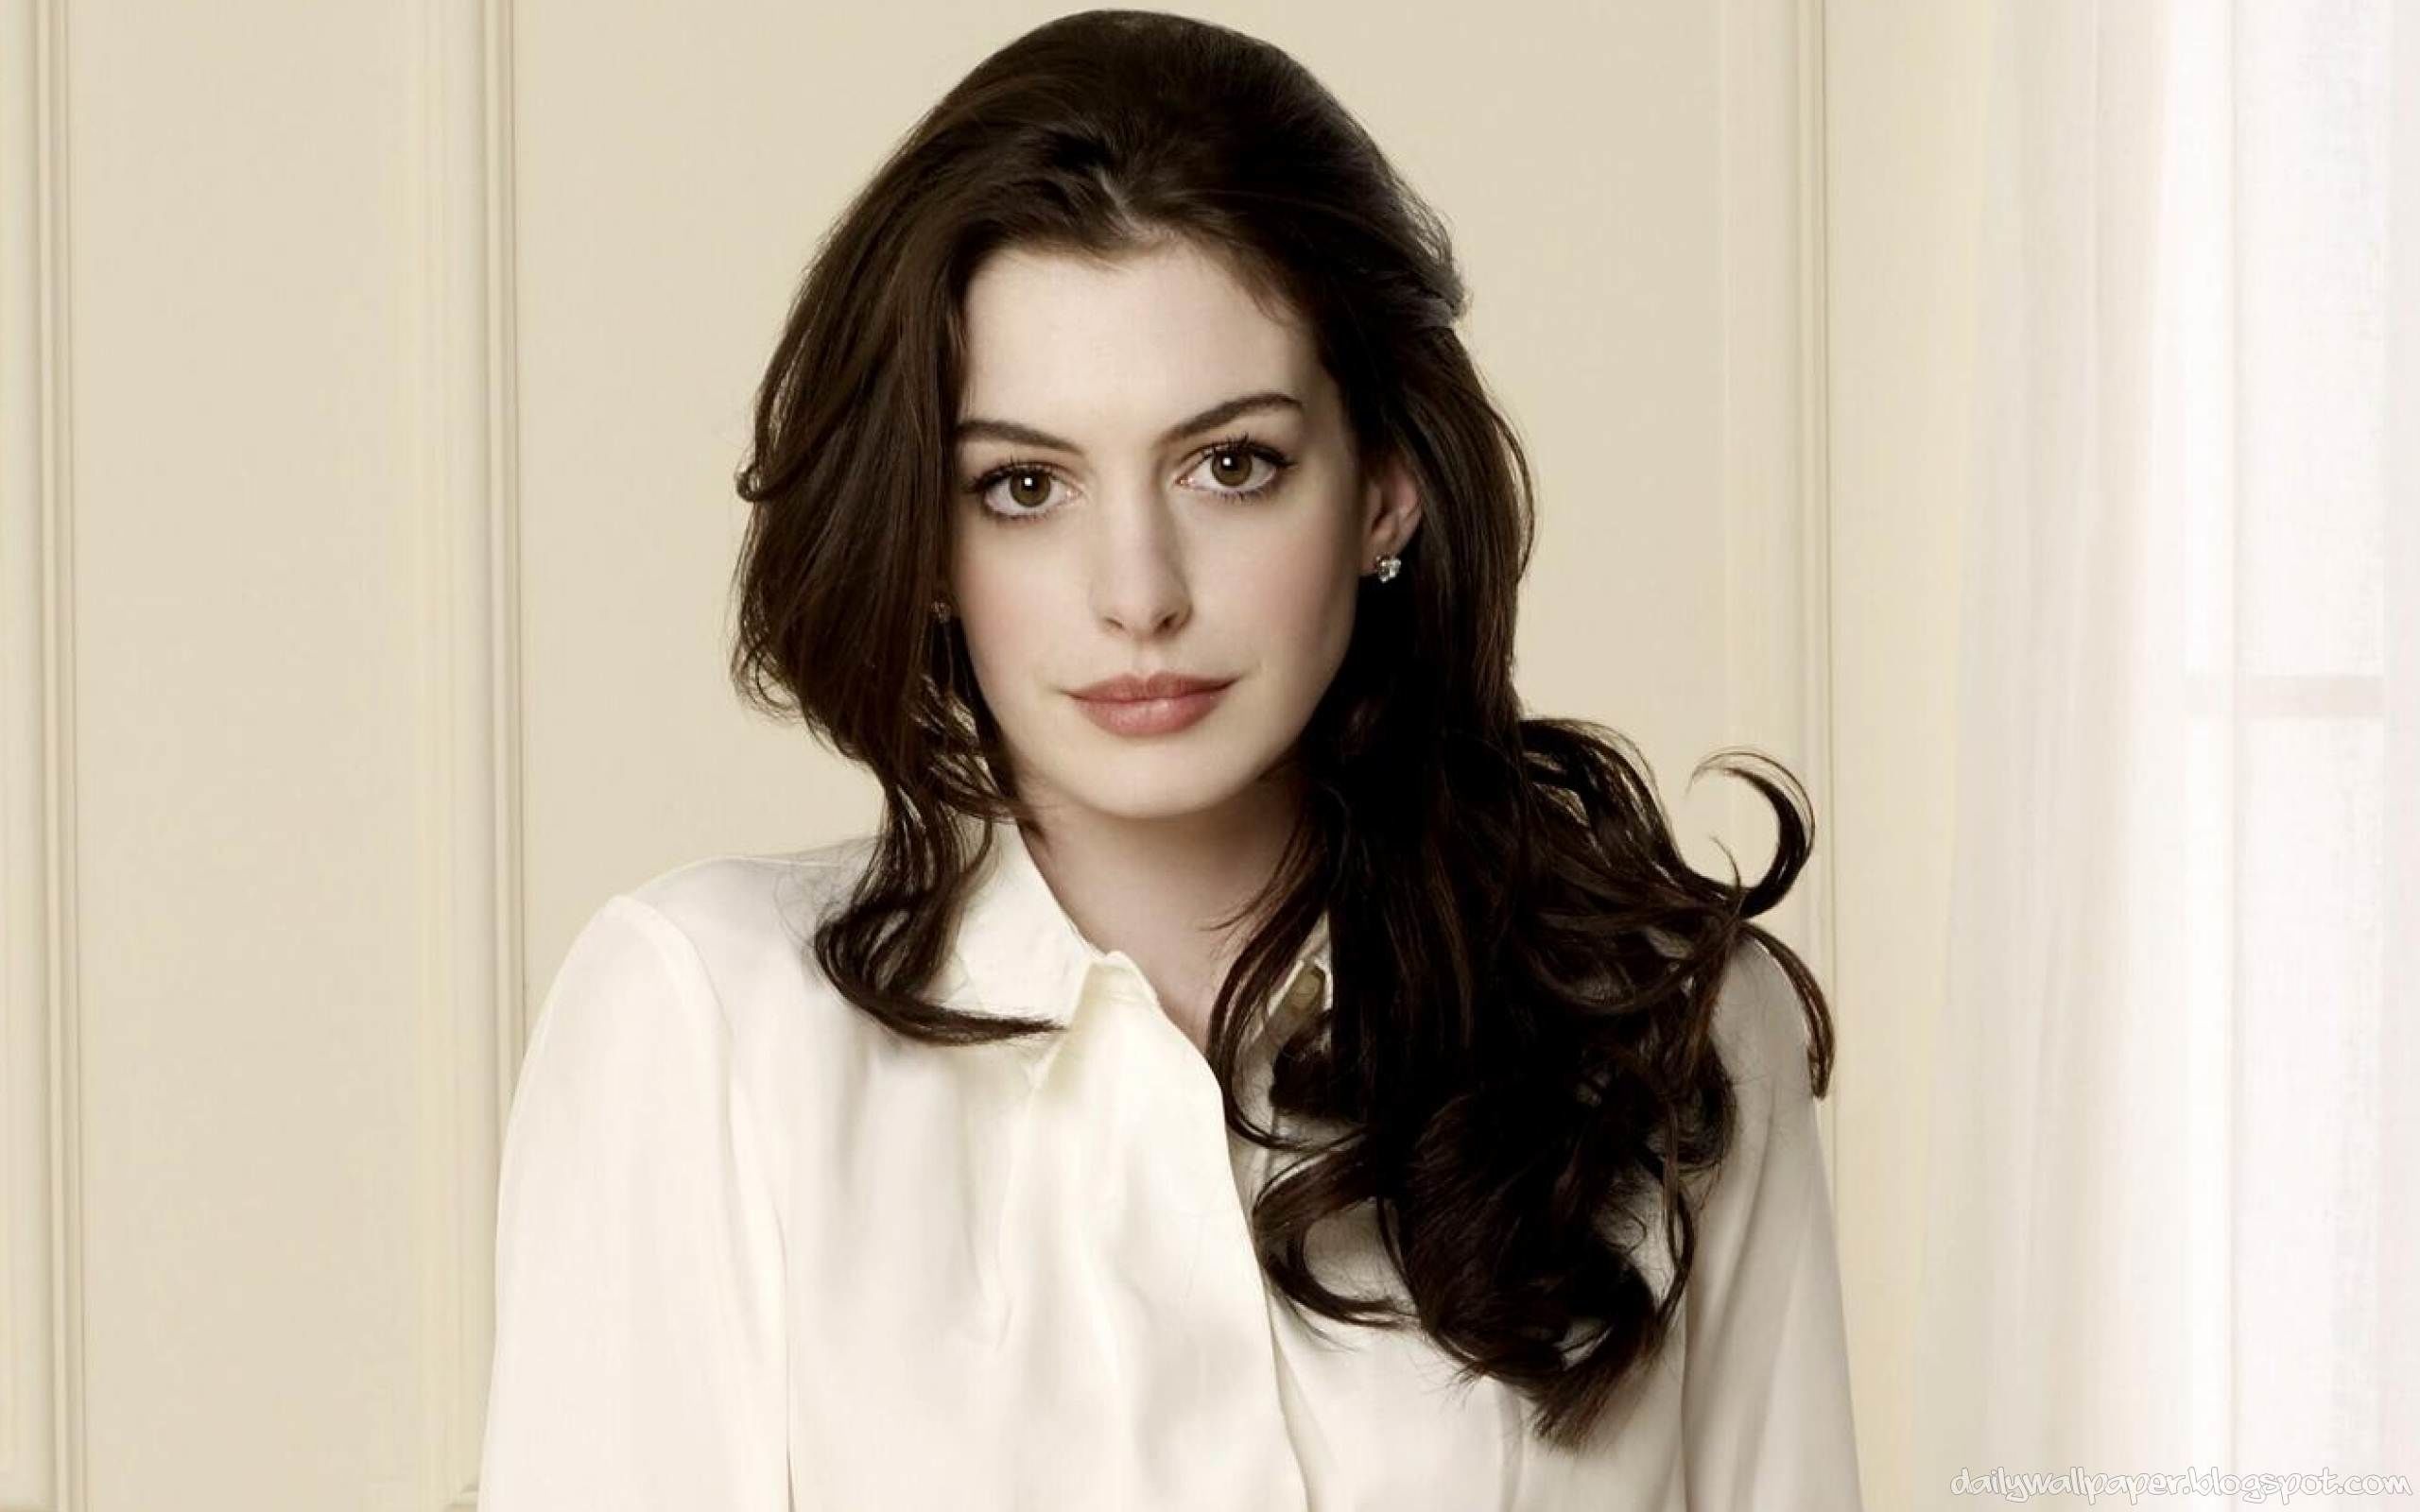 3. Anne Hathaway